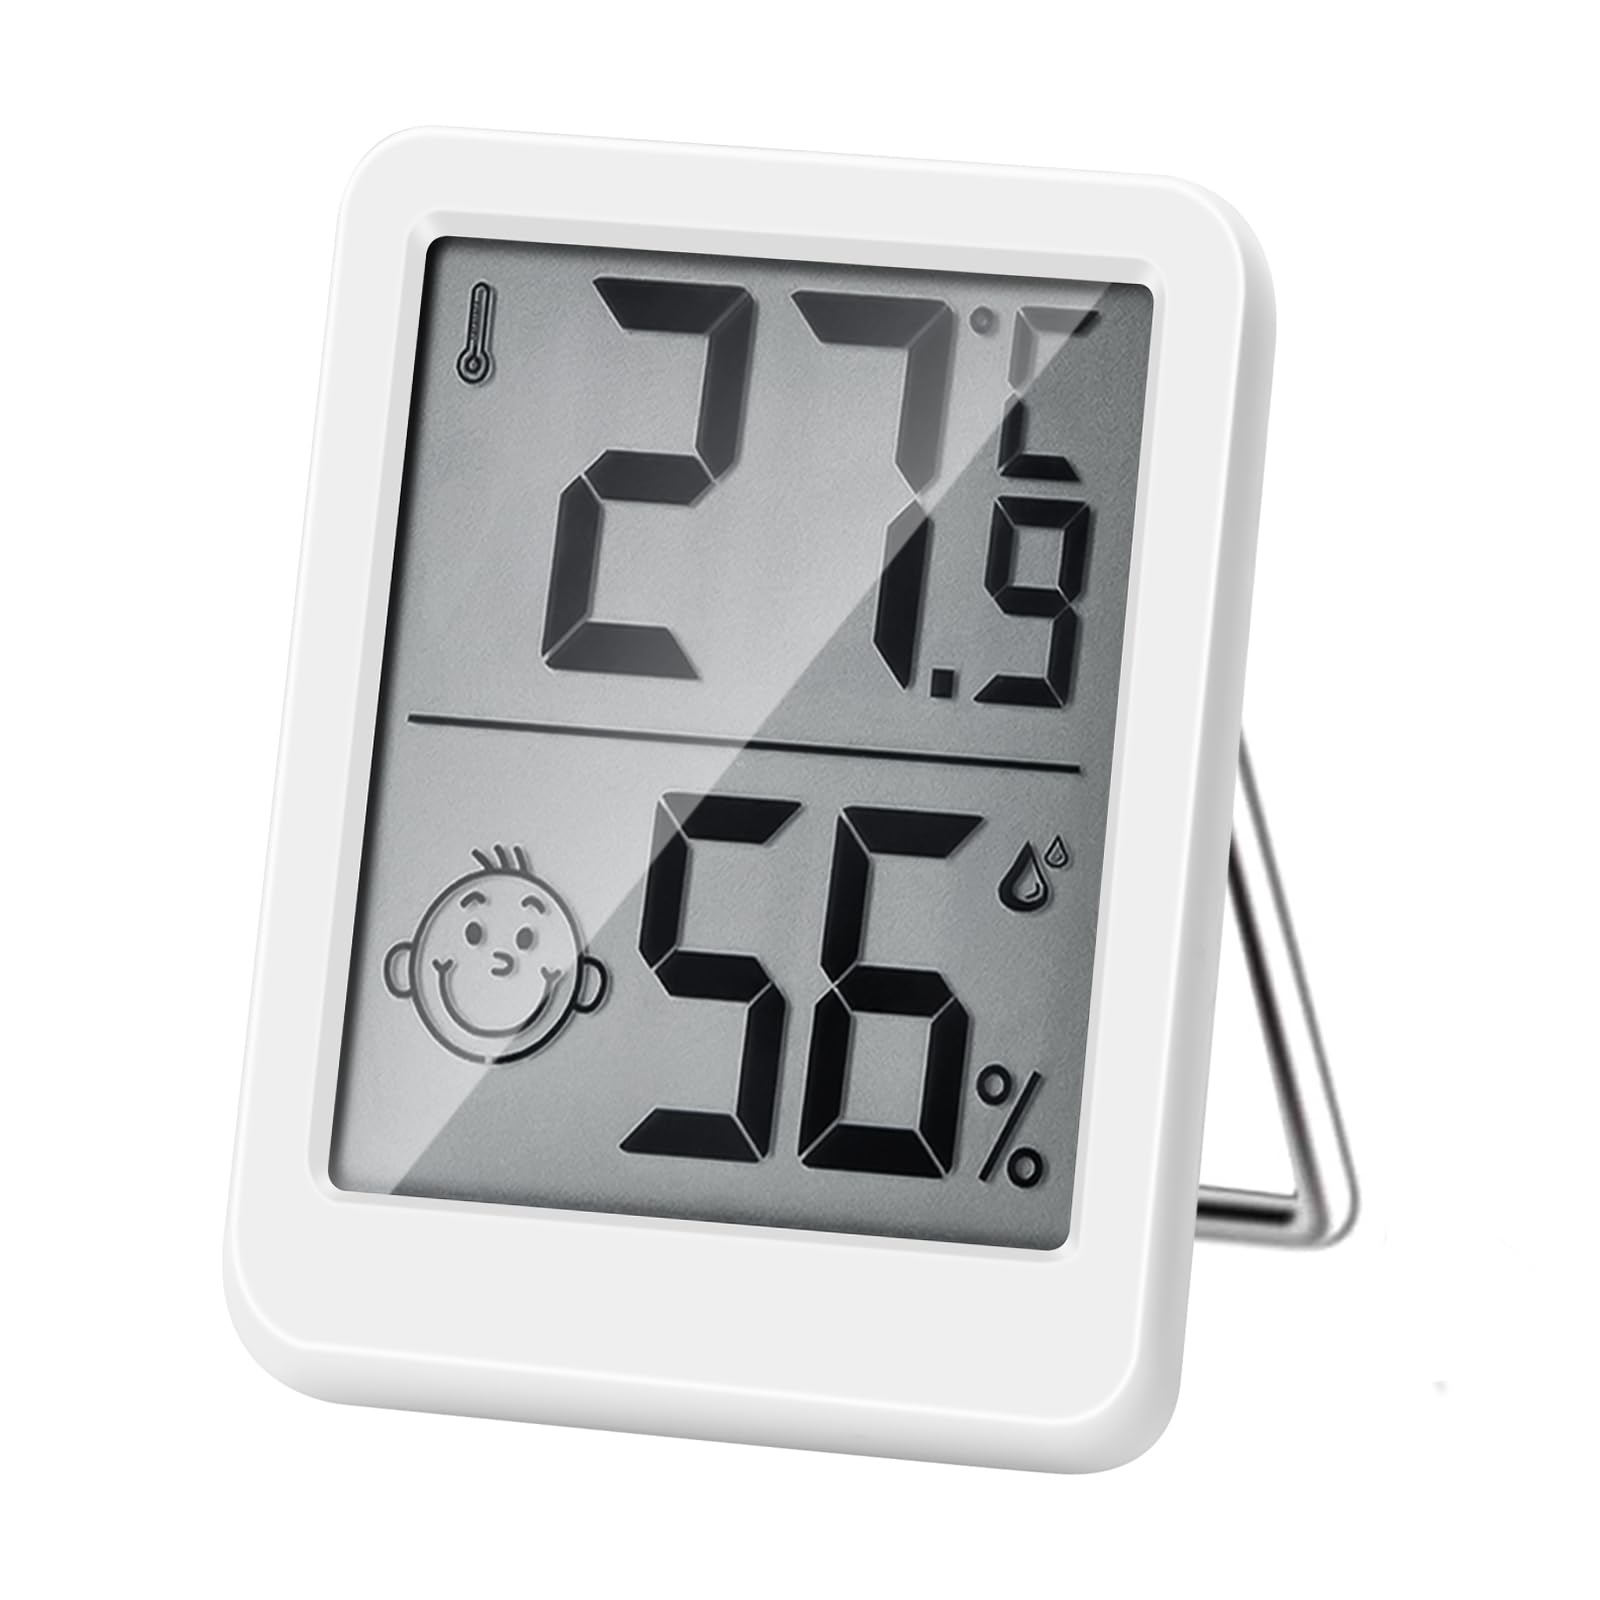 Thermomètre numérique LCD hygromètre hygromètre Chambre d'intérieur Horloge  de température blanc